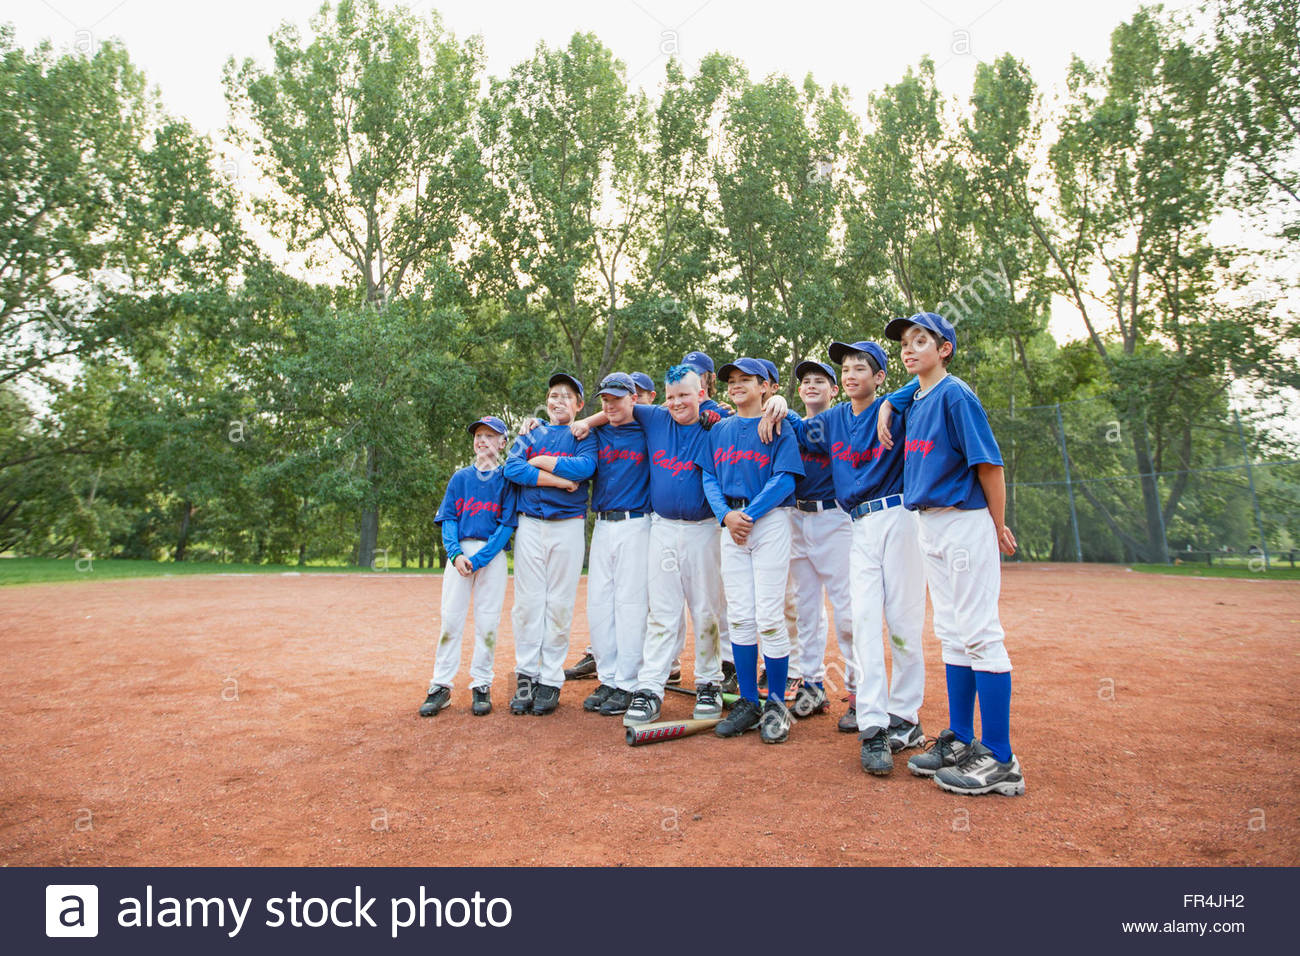 Foto de equipo del equipo de béisbol de los muchachos. Foto de stock